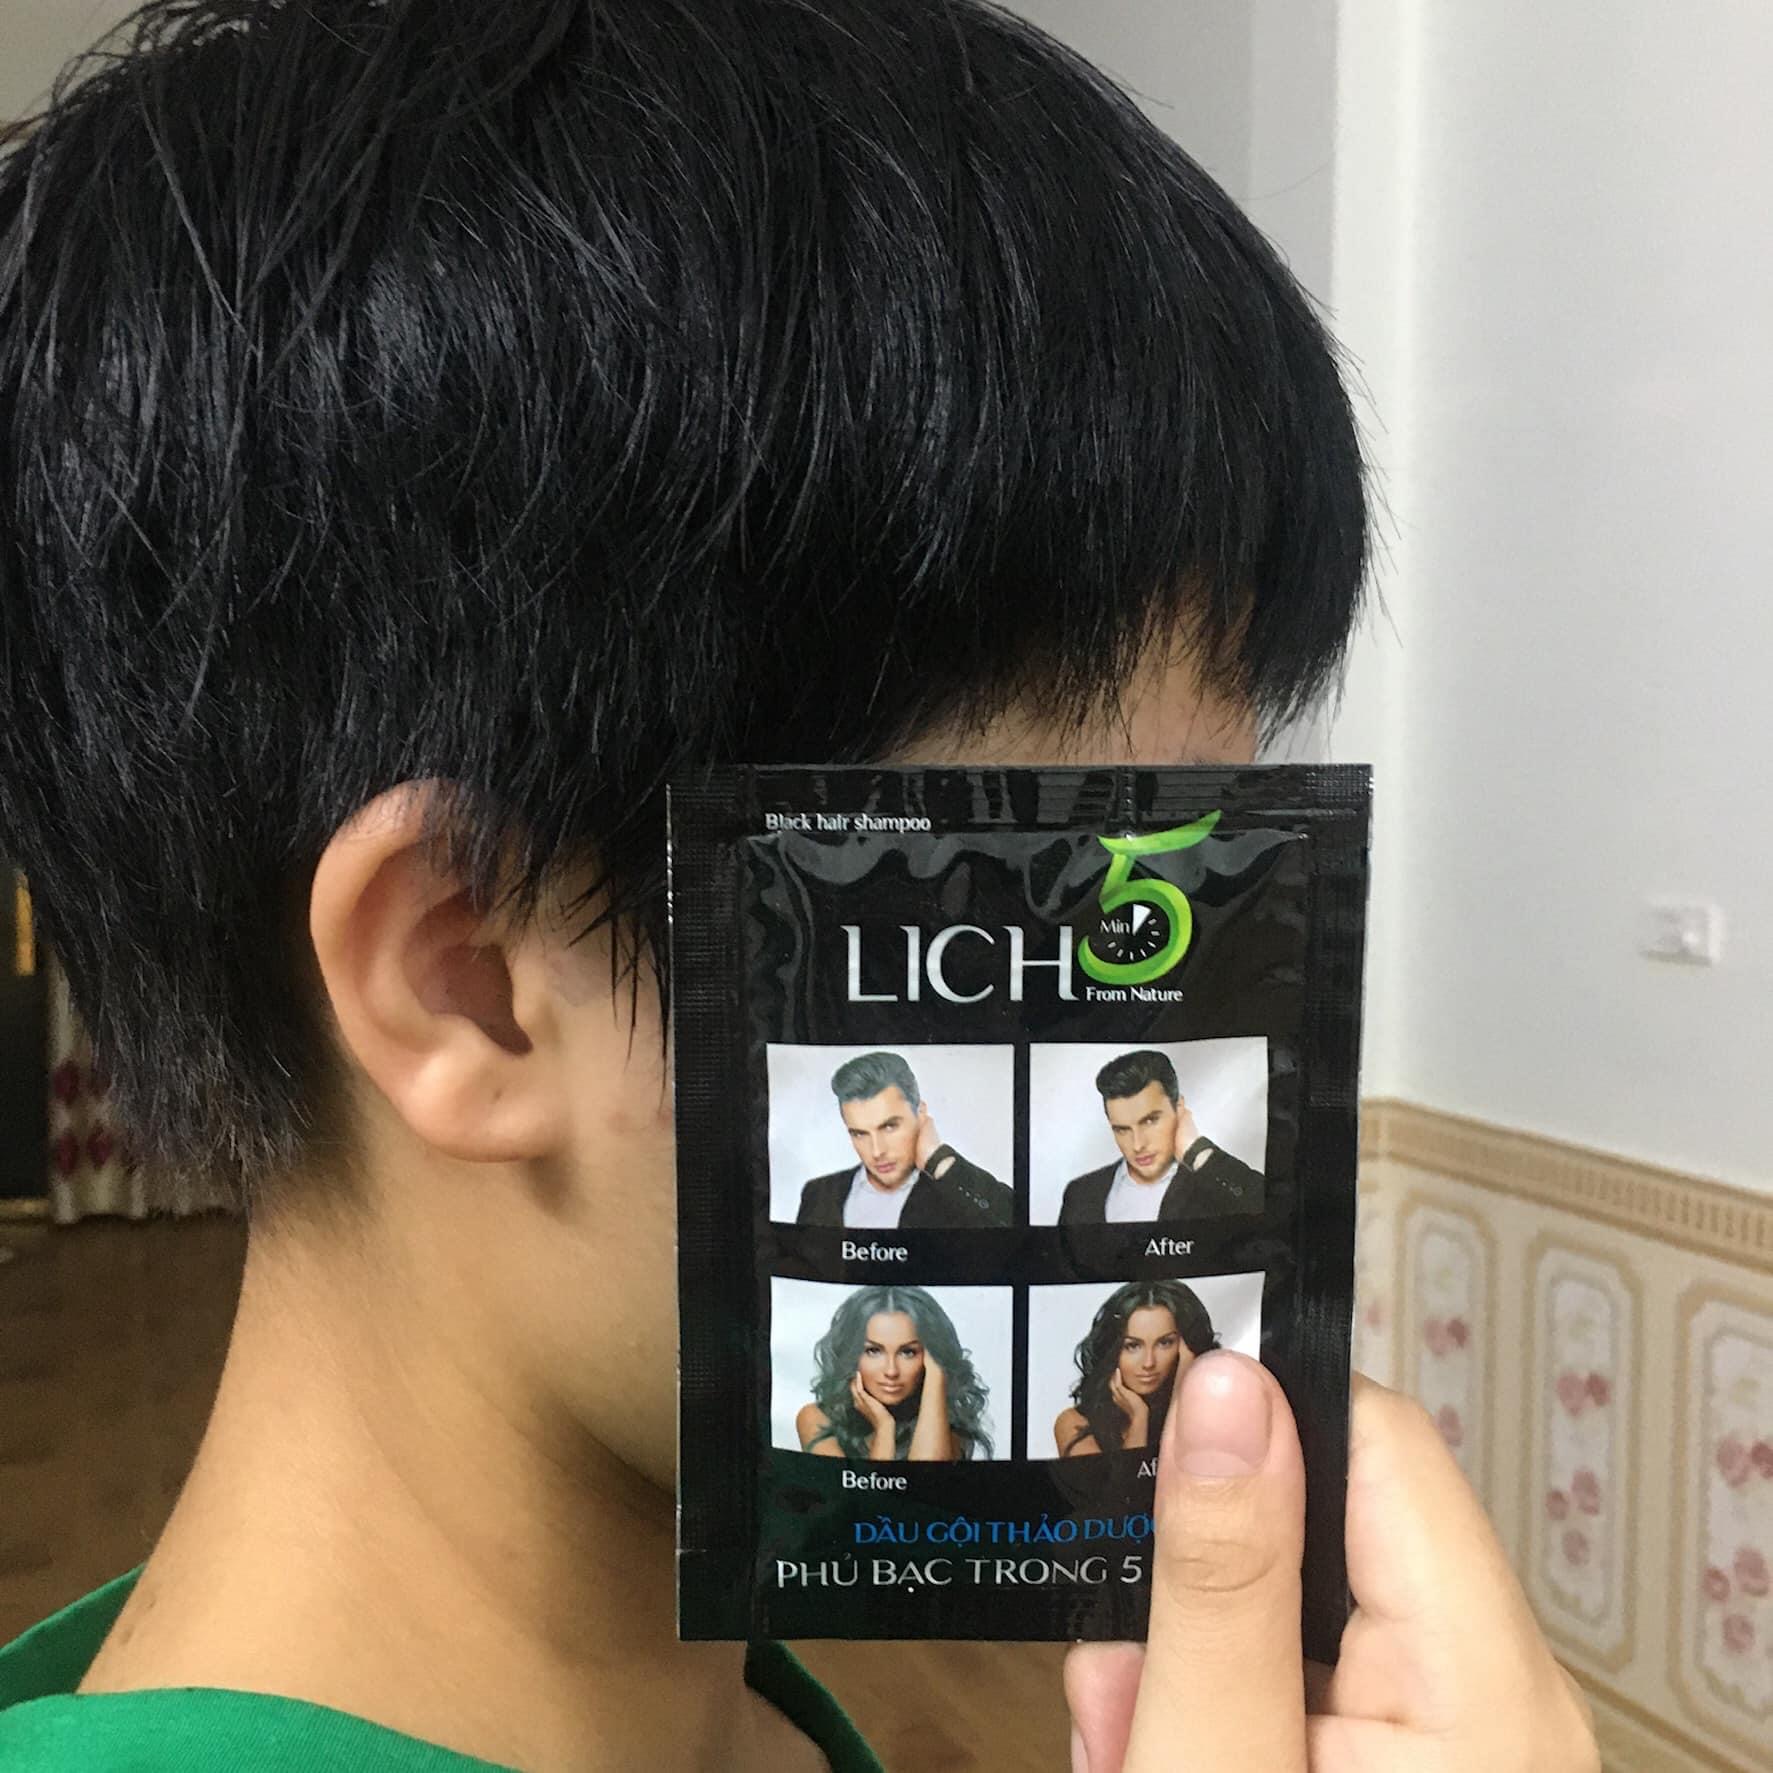 Dầu gội nhuộm tóc Lich5 màu nâu đen - Lên màu tự nhiên - Sử dụng đơn giản, tiện lợi, mùi dễ chịu - Tặng bộ kit tự nhuộm tại nhà